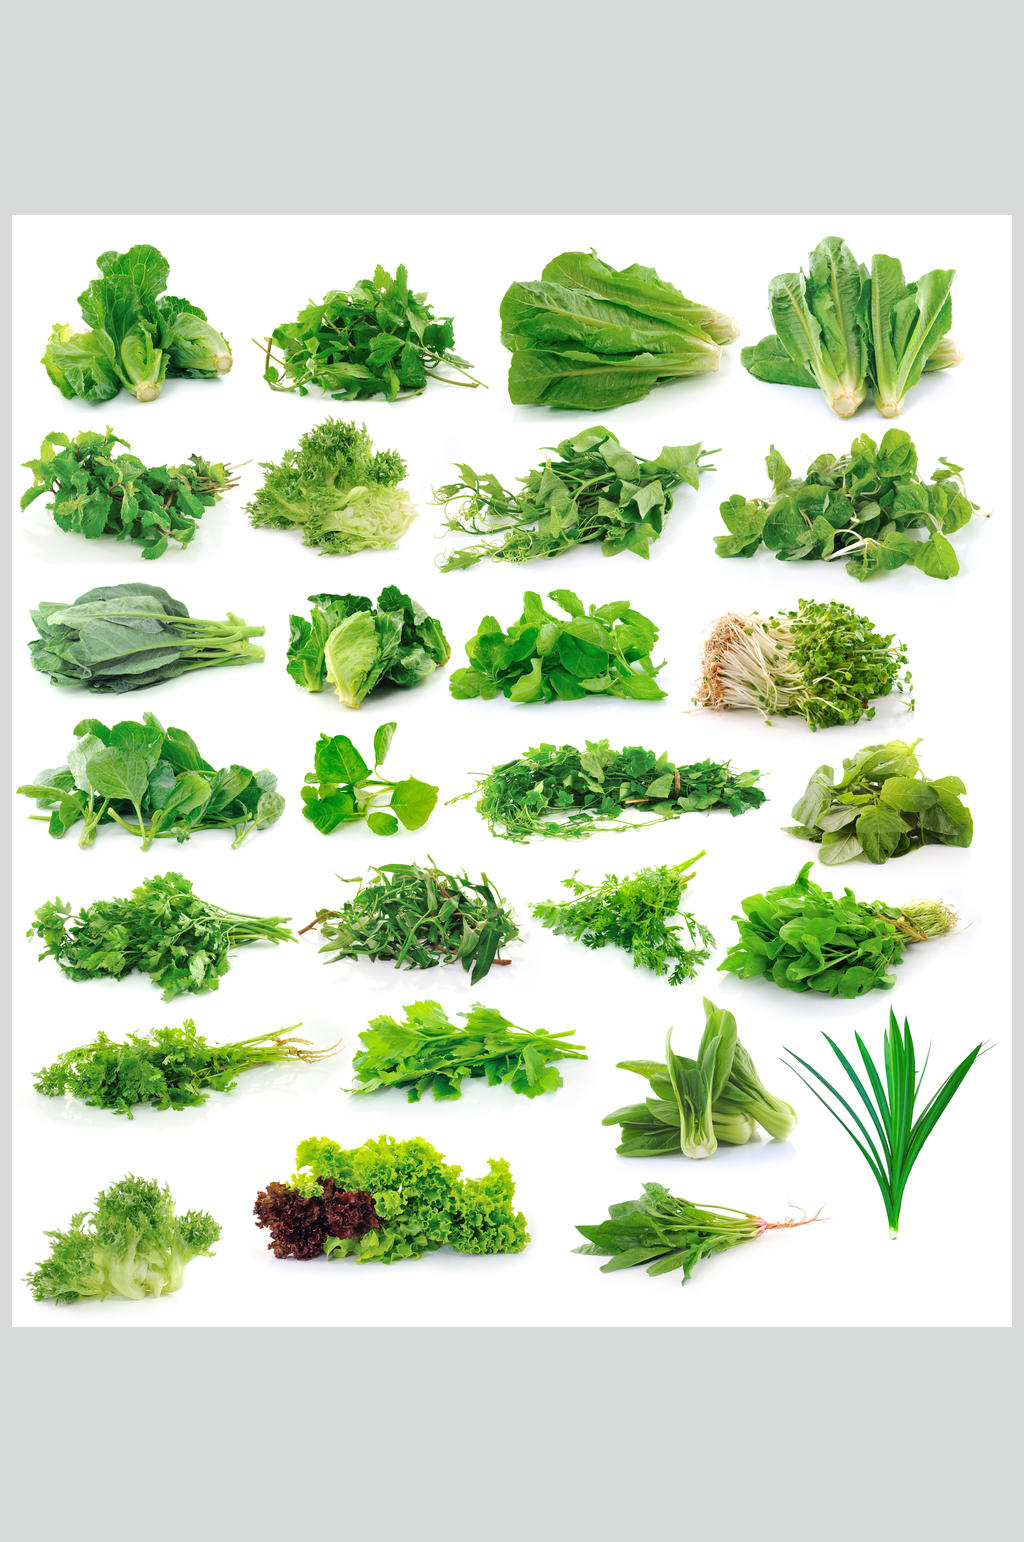 青菜的种类 品种图片